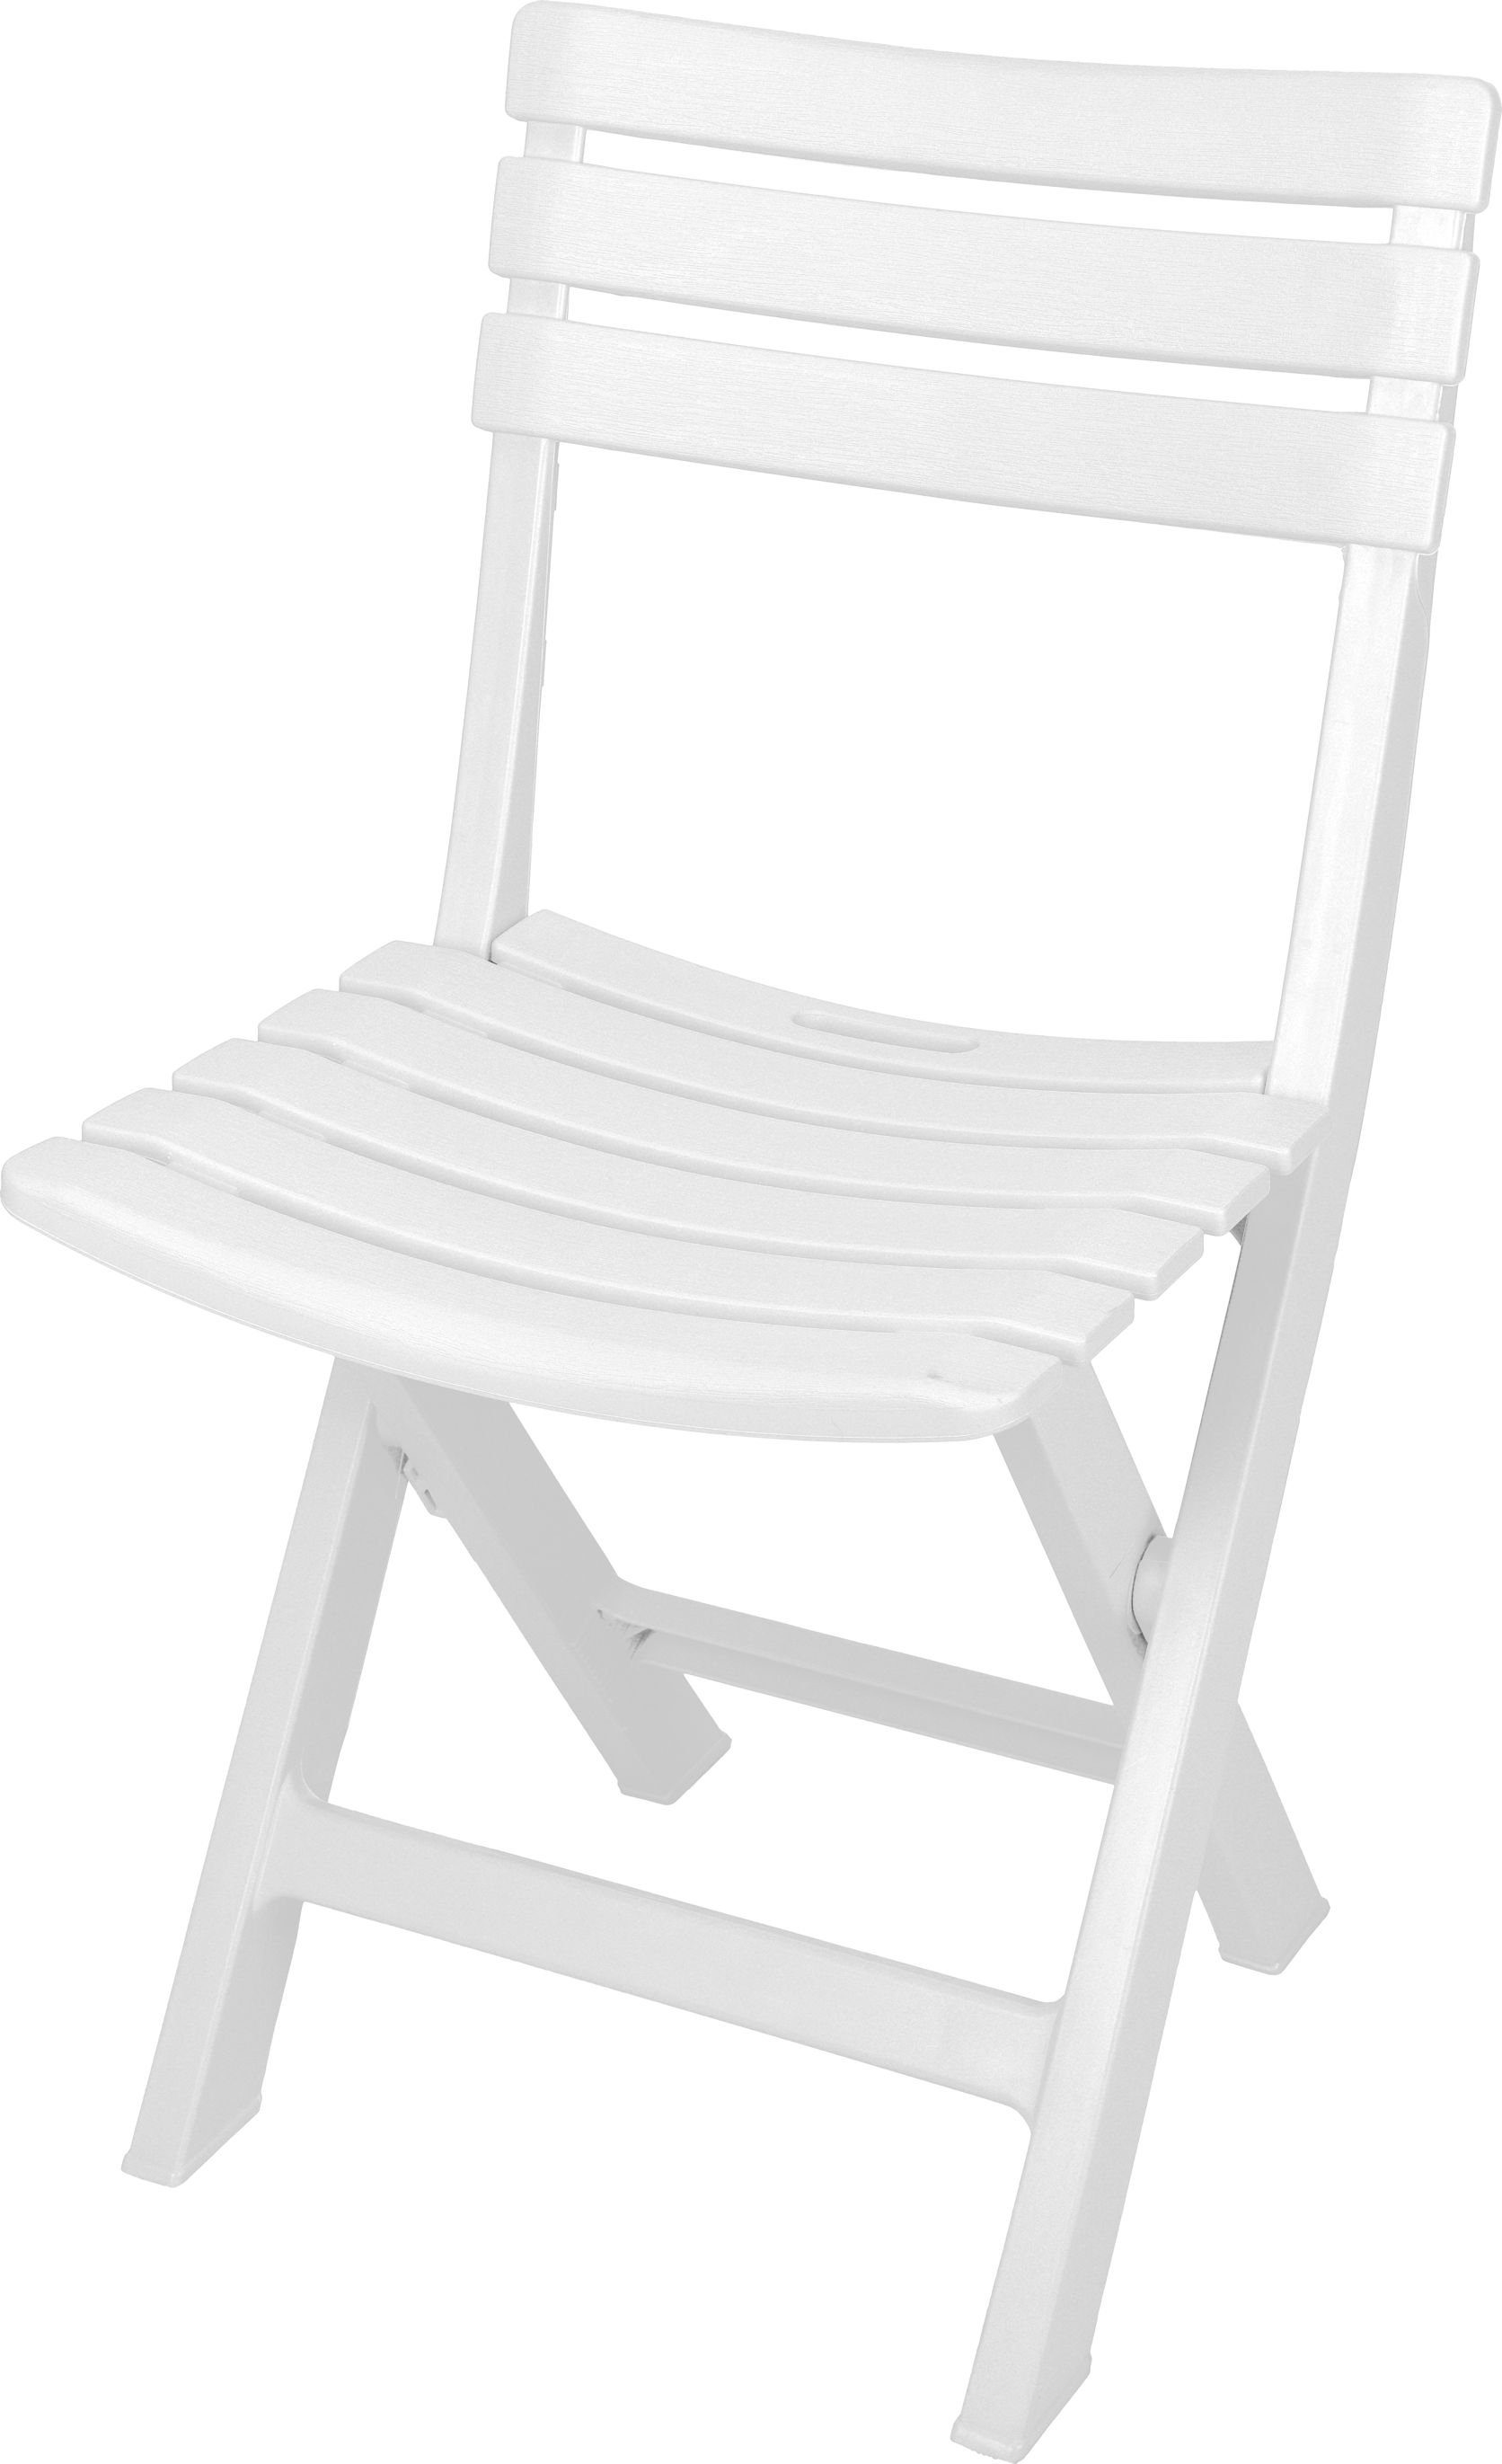 Spetebo Klappstuhl Kunststoff Klappstuhl 80 x 45 cm - weiß (Einteilig, 1 St), Garten Balkon Terrasse Klapp Stuhl klappbar